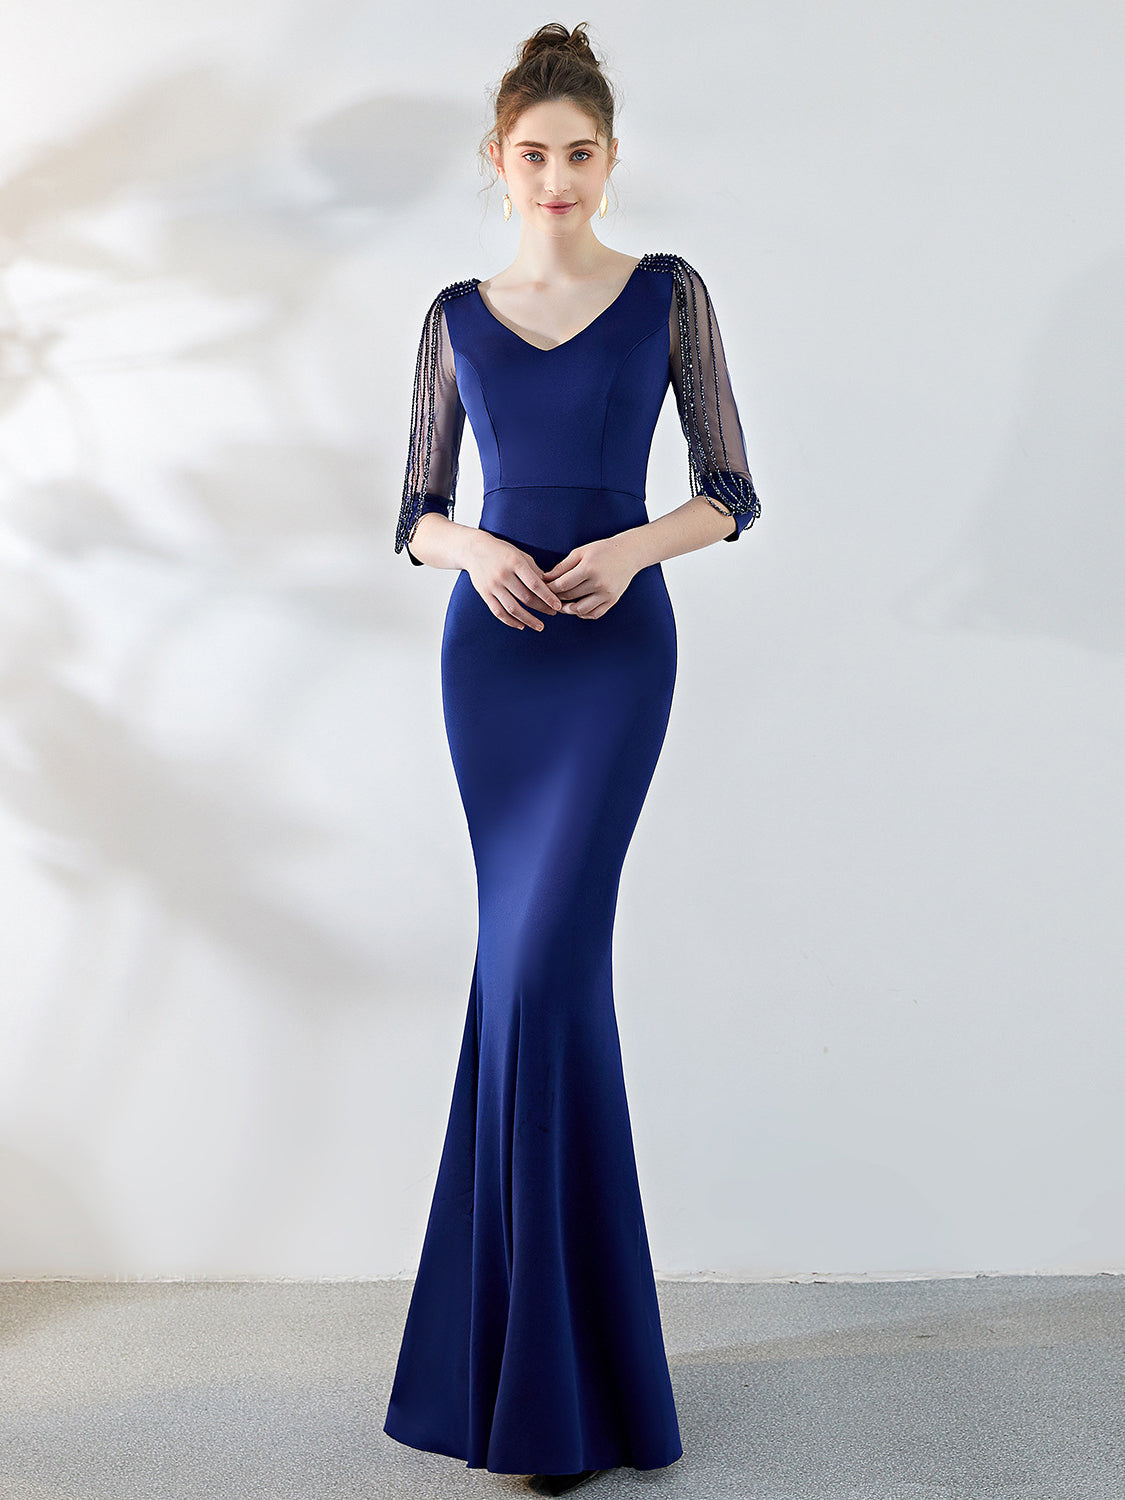 slim fishtail dress evening dress